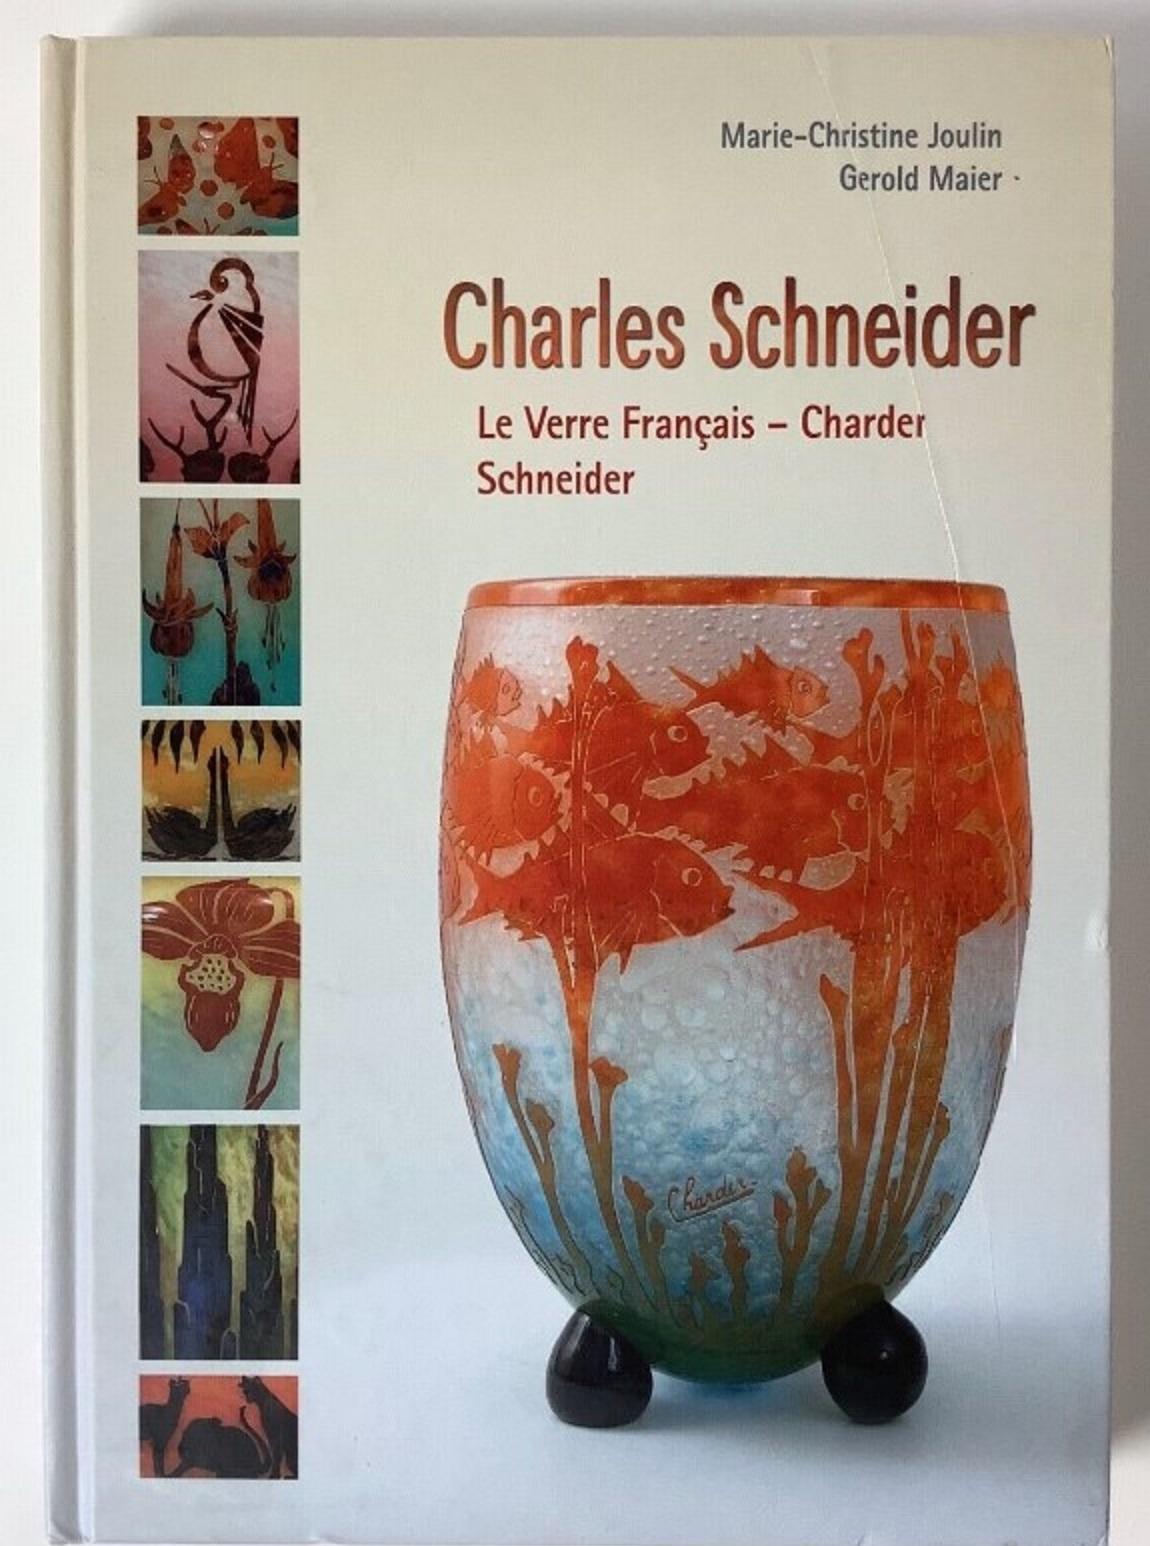 Vase Signe : Le Verre Français 
acide travaillé
Le verre à camée Le Verre était une ligne distincte de verre d'art conçue par Charles Schneider. Sa production s'est faite en même temps que celle des lunettes conçues par Schneider entre 1918 et 1933.